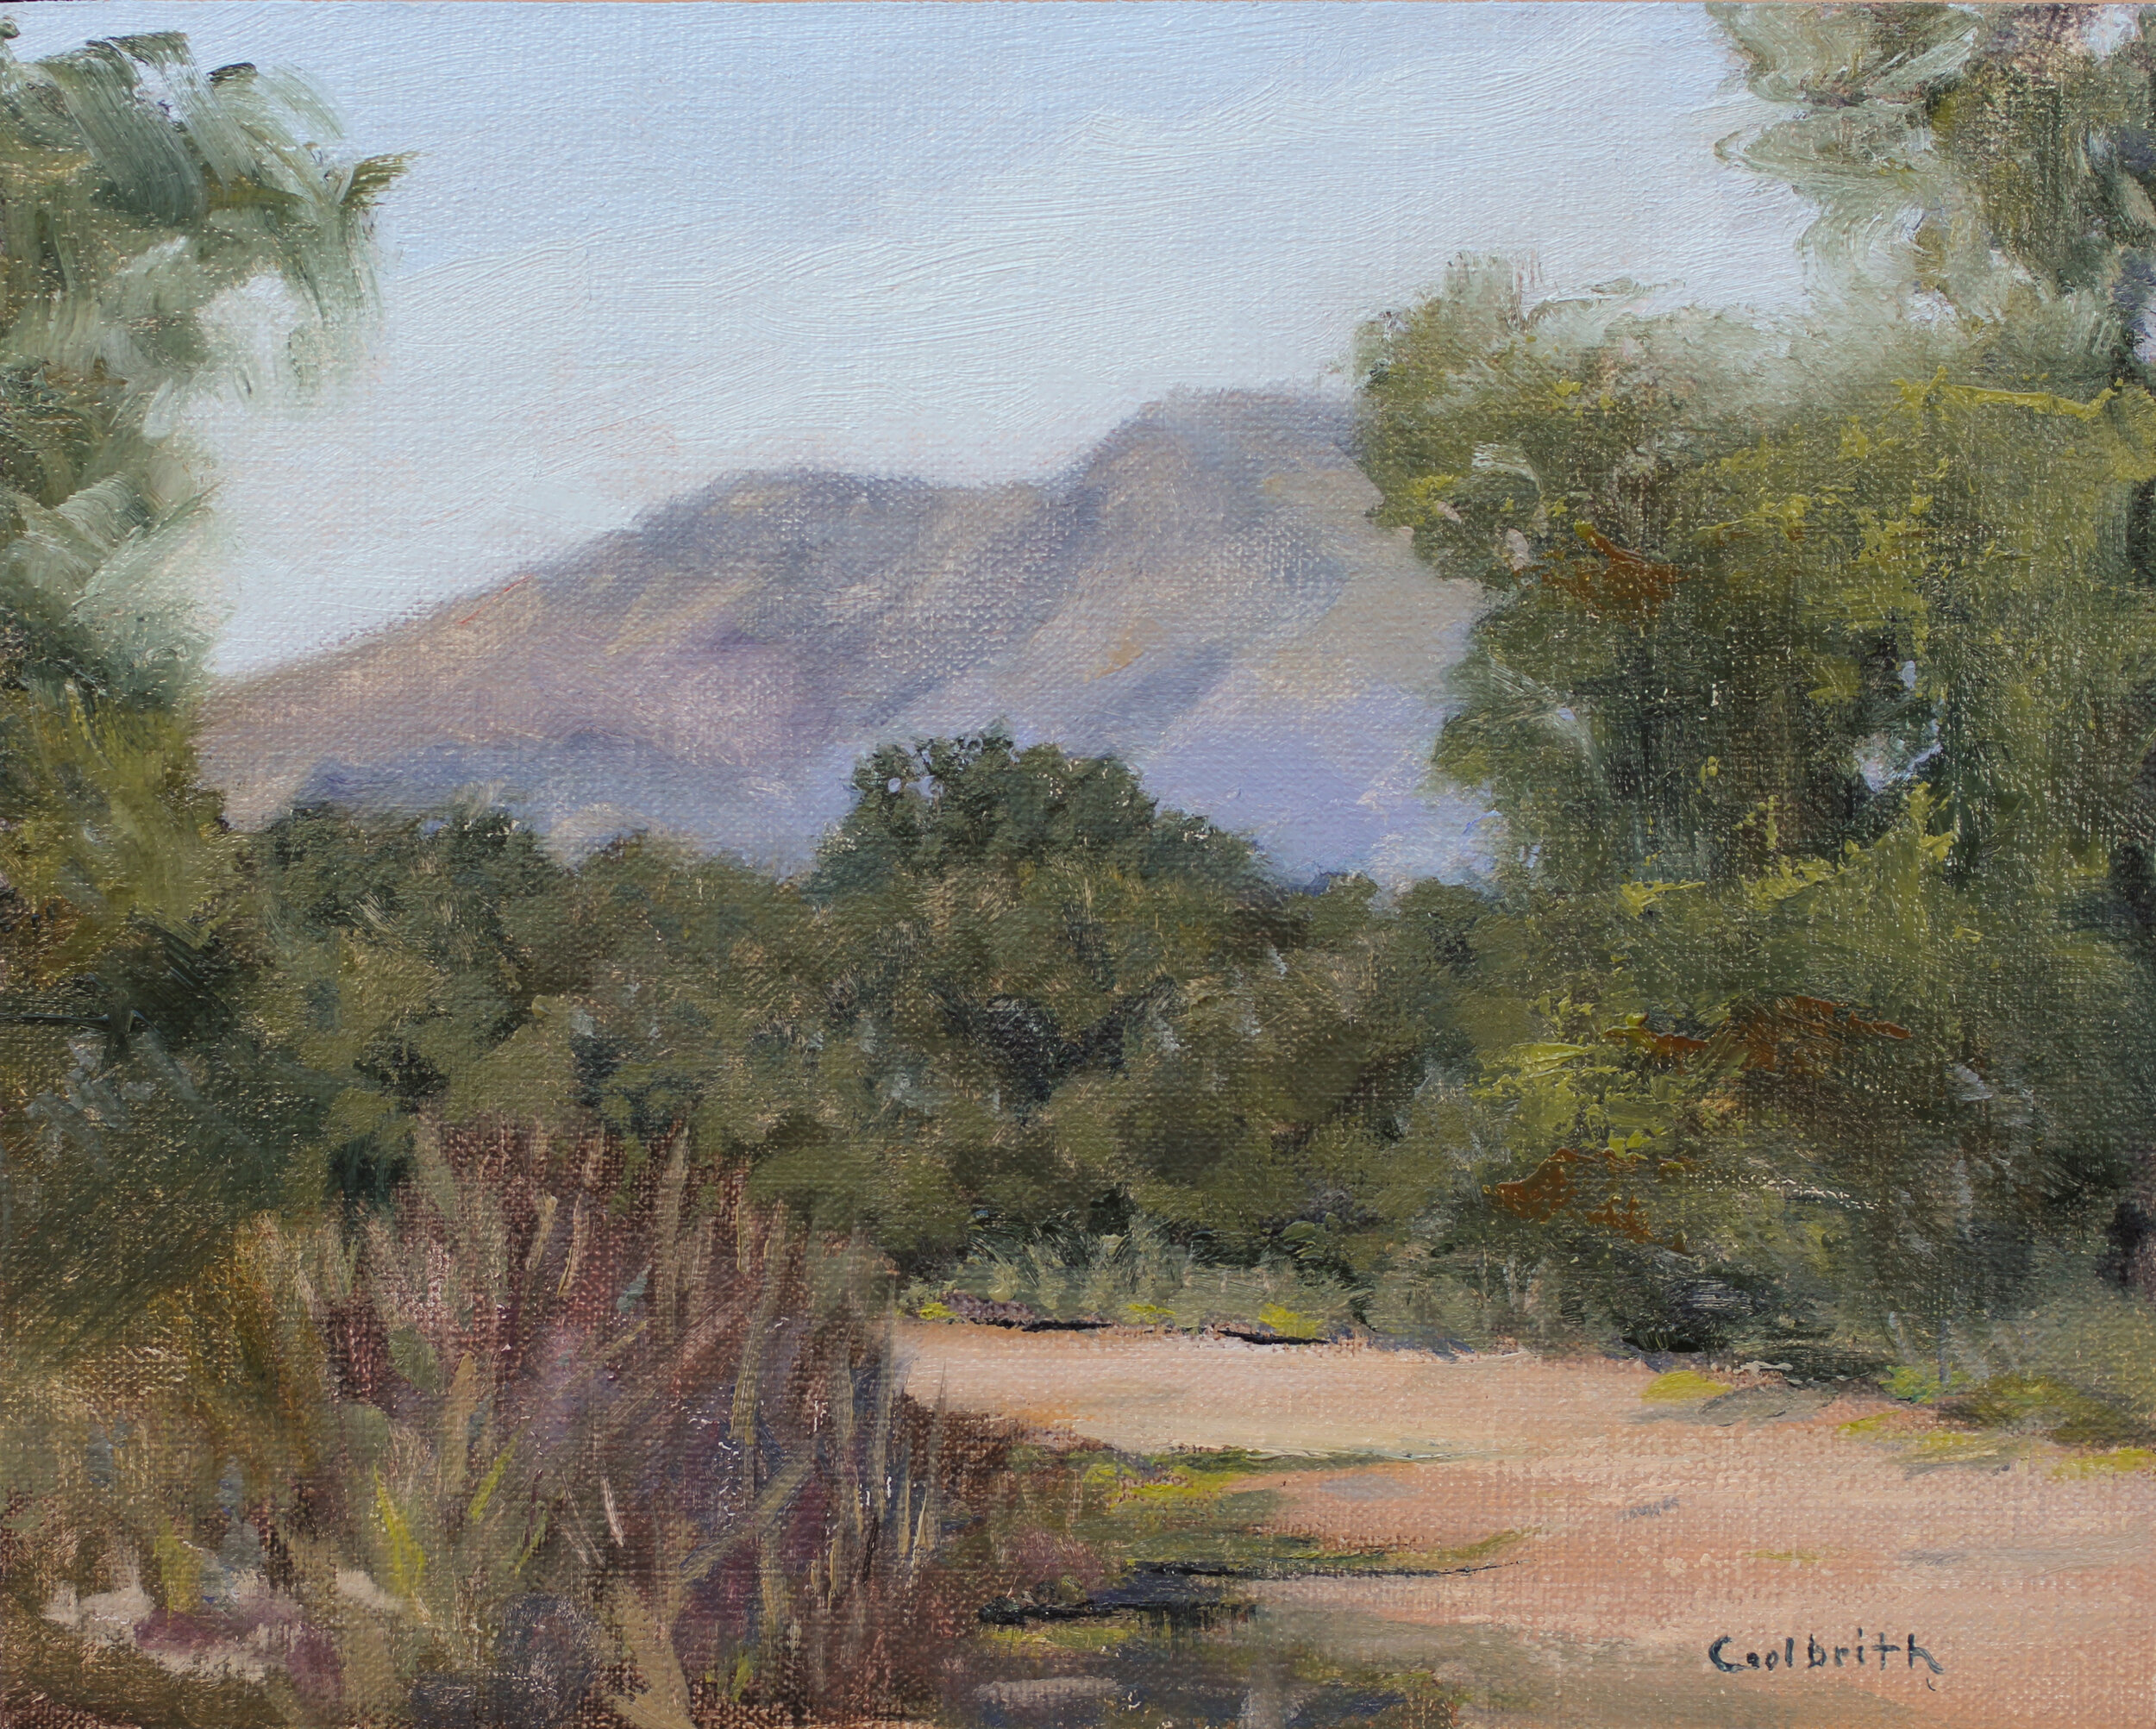 Daniel Jones, "Watershed Loop Trail," Oil on canvas